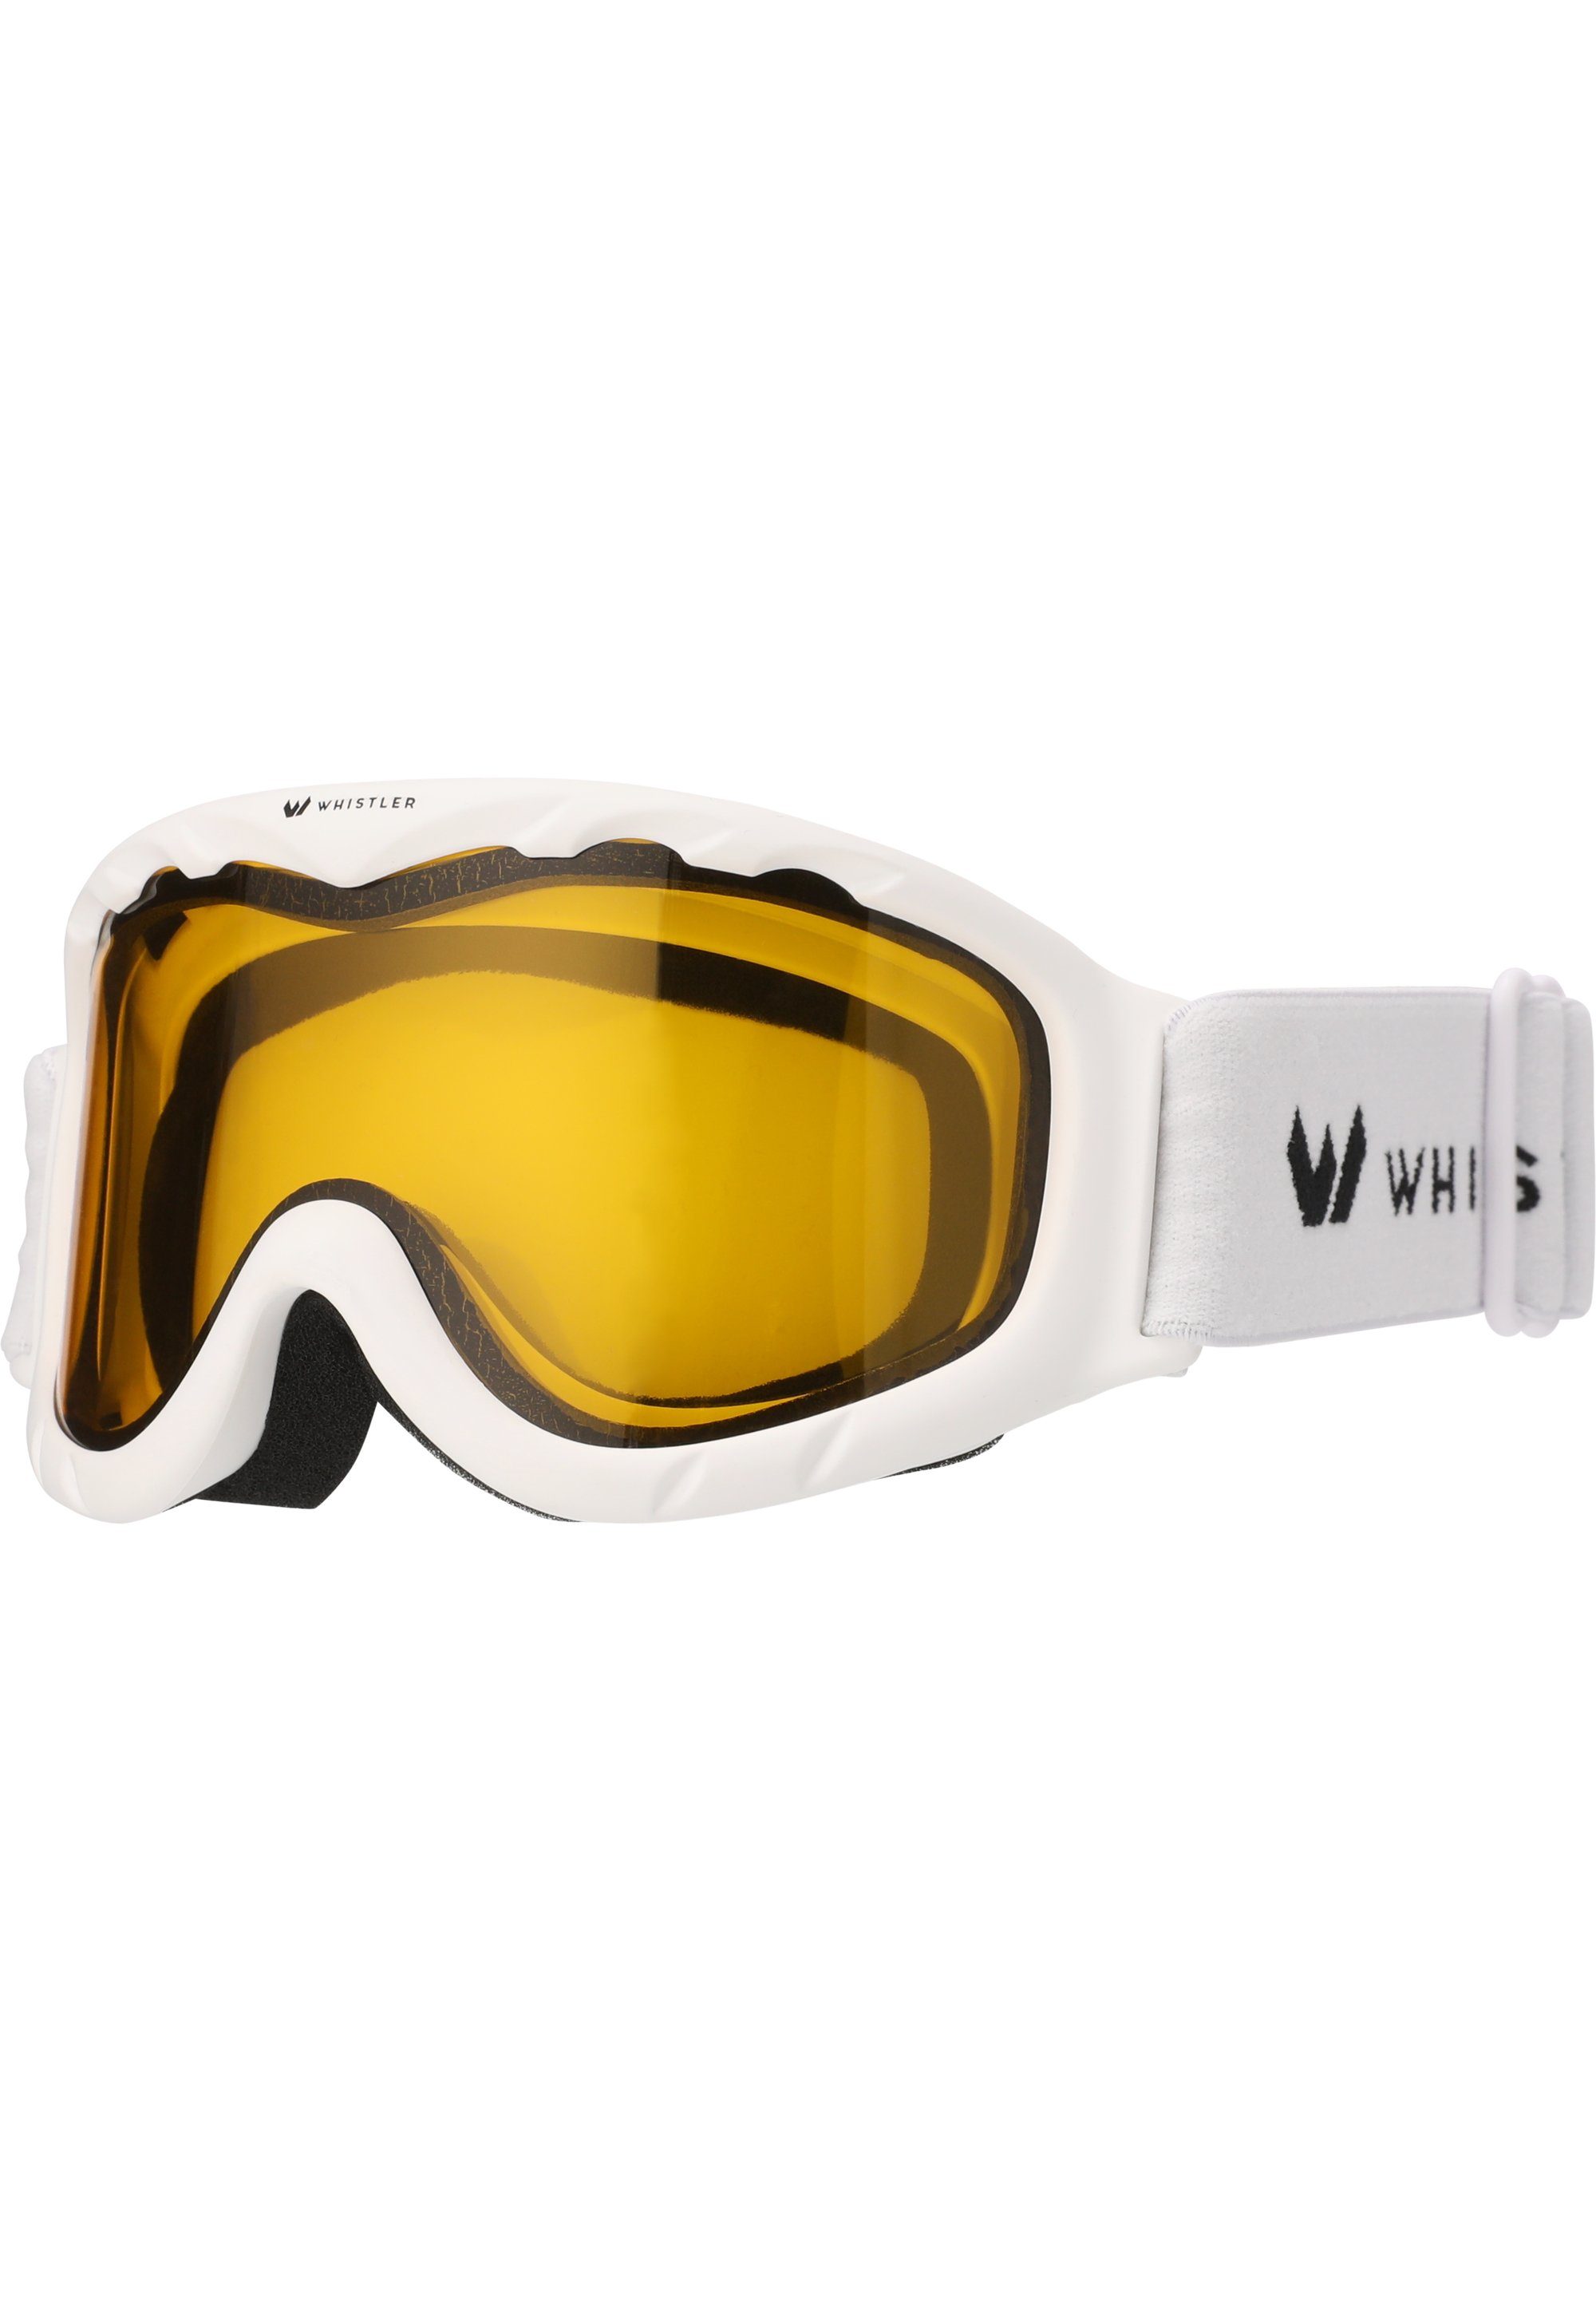 Skibrille Ski Anti-Fog-Beschichtung WHISTLER Goggle, weiß WS300 Jr. mit